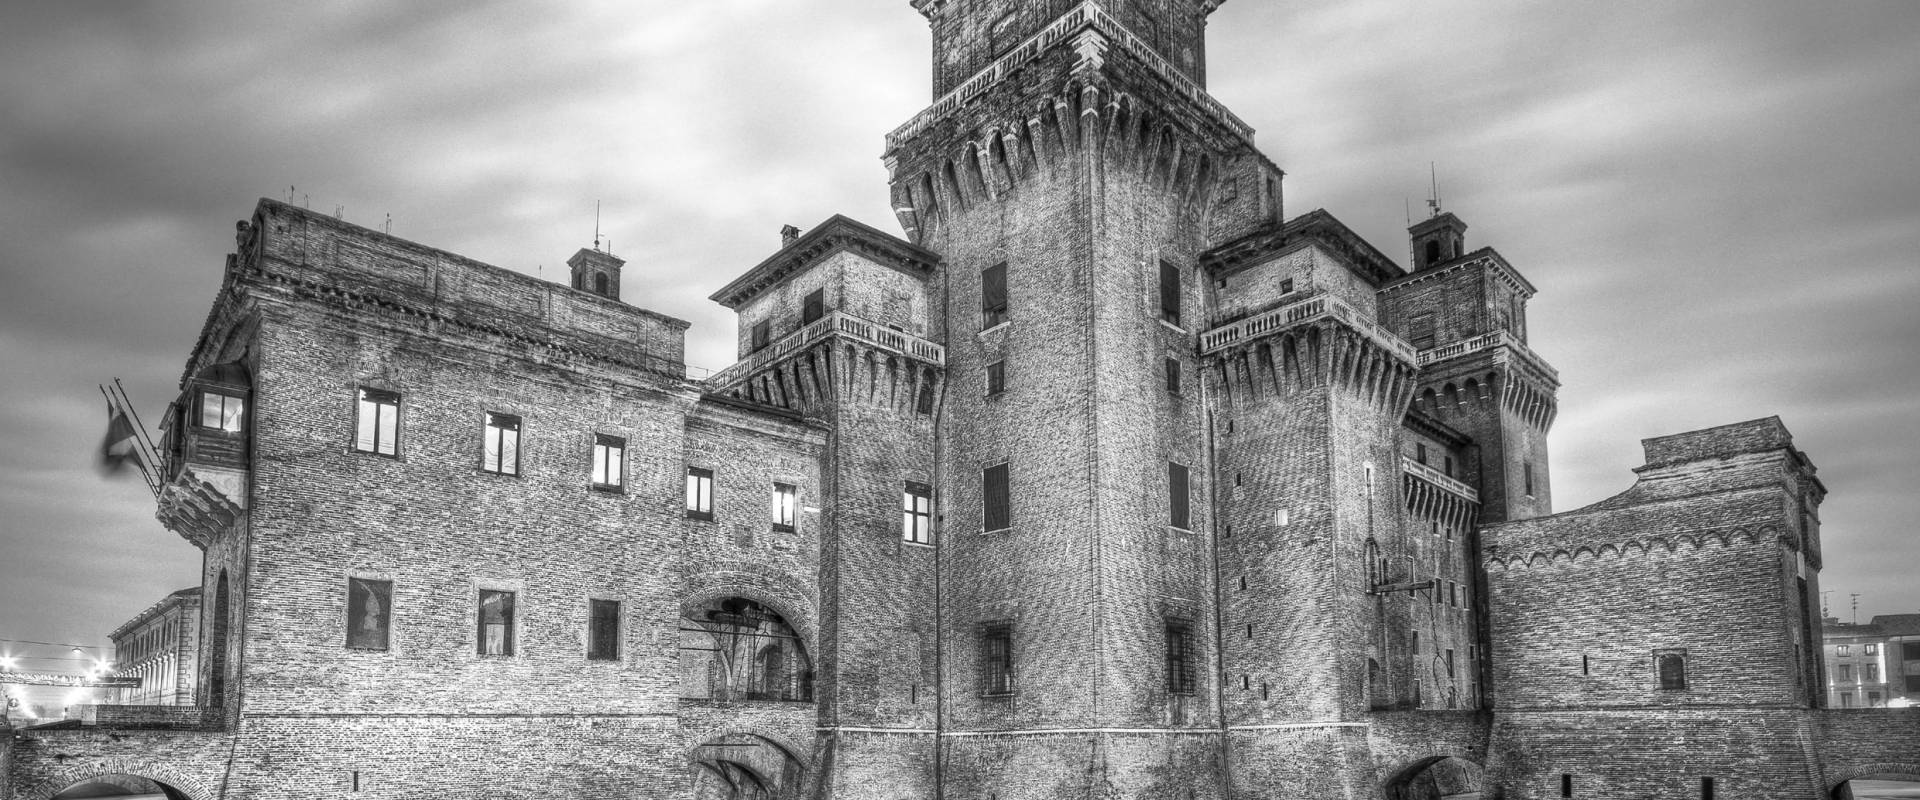 Impresso nella Storia - Castello Estense foto di Nbisi